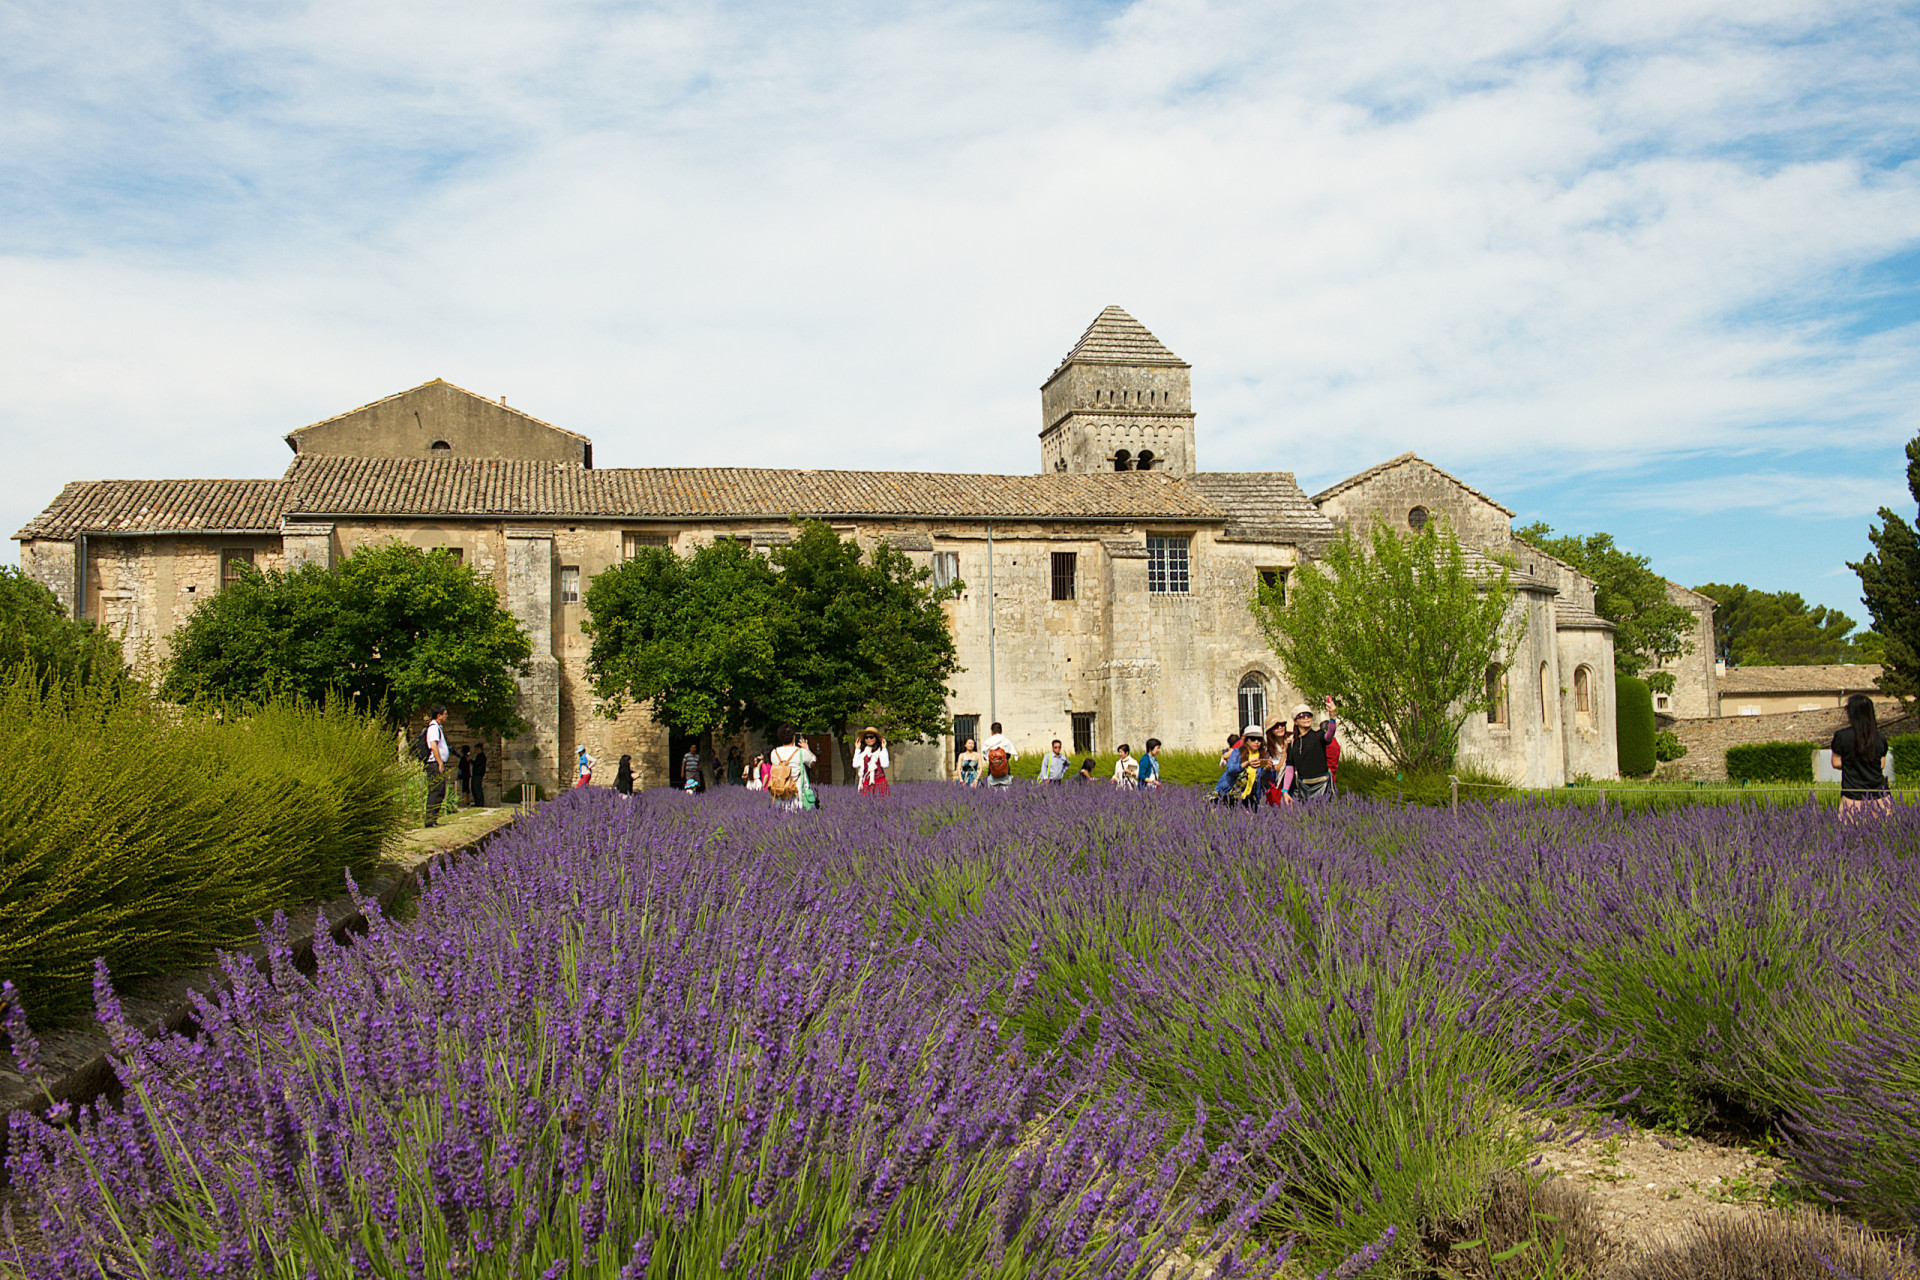 <p>En juillet 2014, à l'abri des médias et curieux, le couple aurait célébré son union dans le sud de la France, au château de Roussan à Saint-Rémy de Provence.</p> <p>Découvrez aussi: <a class="gs-title" href="https://www.starsinsider.com/fr/lifestyle/223811/mariage-les-traditions-depassees" rel="noopener">Mariage: les traditions dépassées</a></p><p>Vous pourrais aussi aimer: </p>